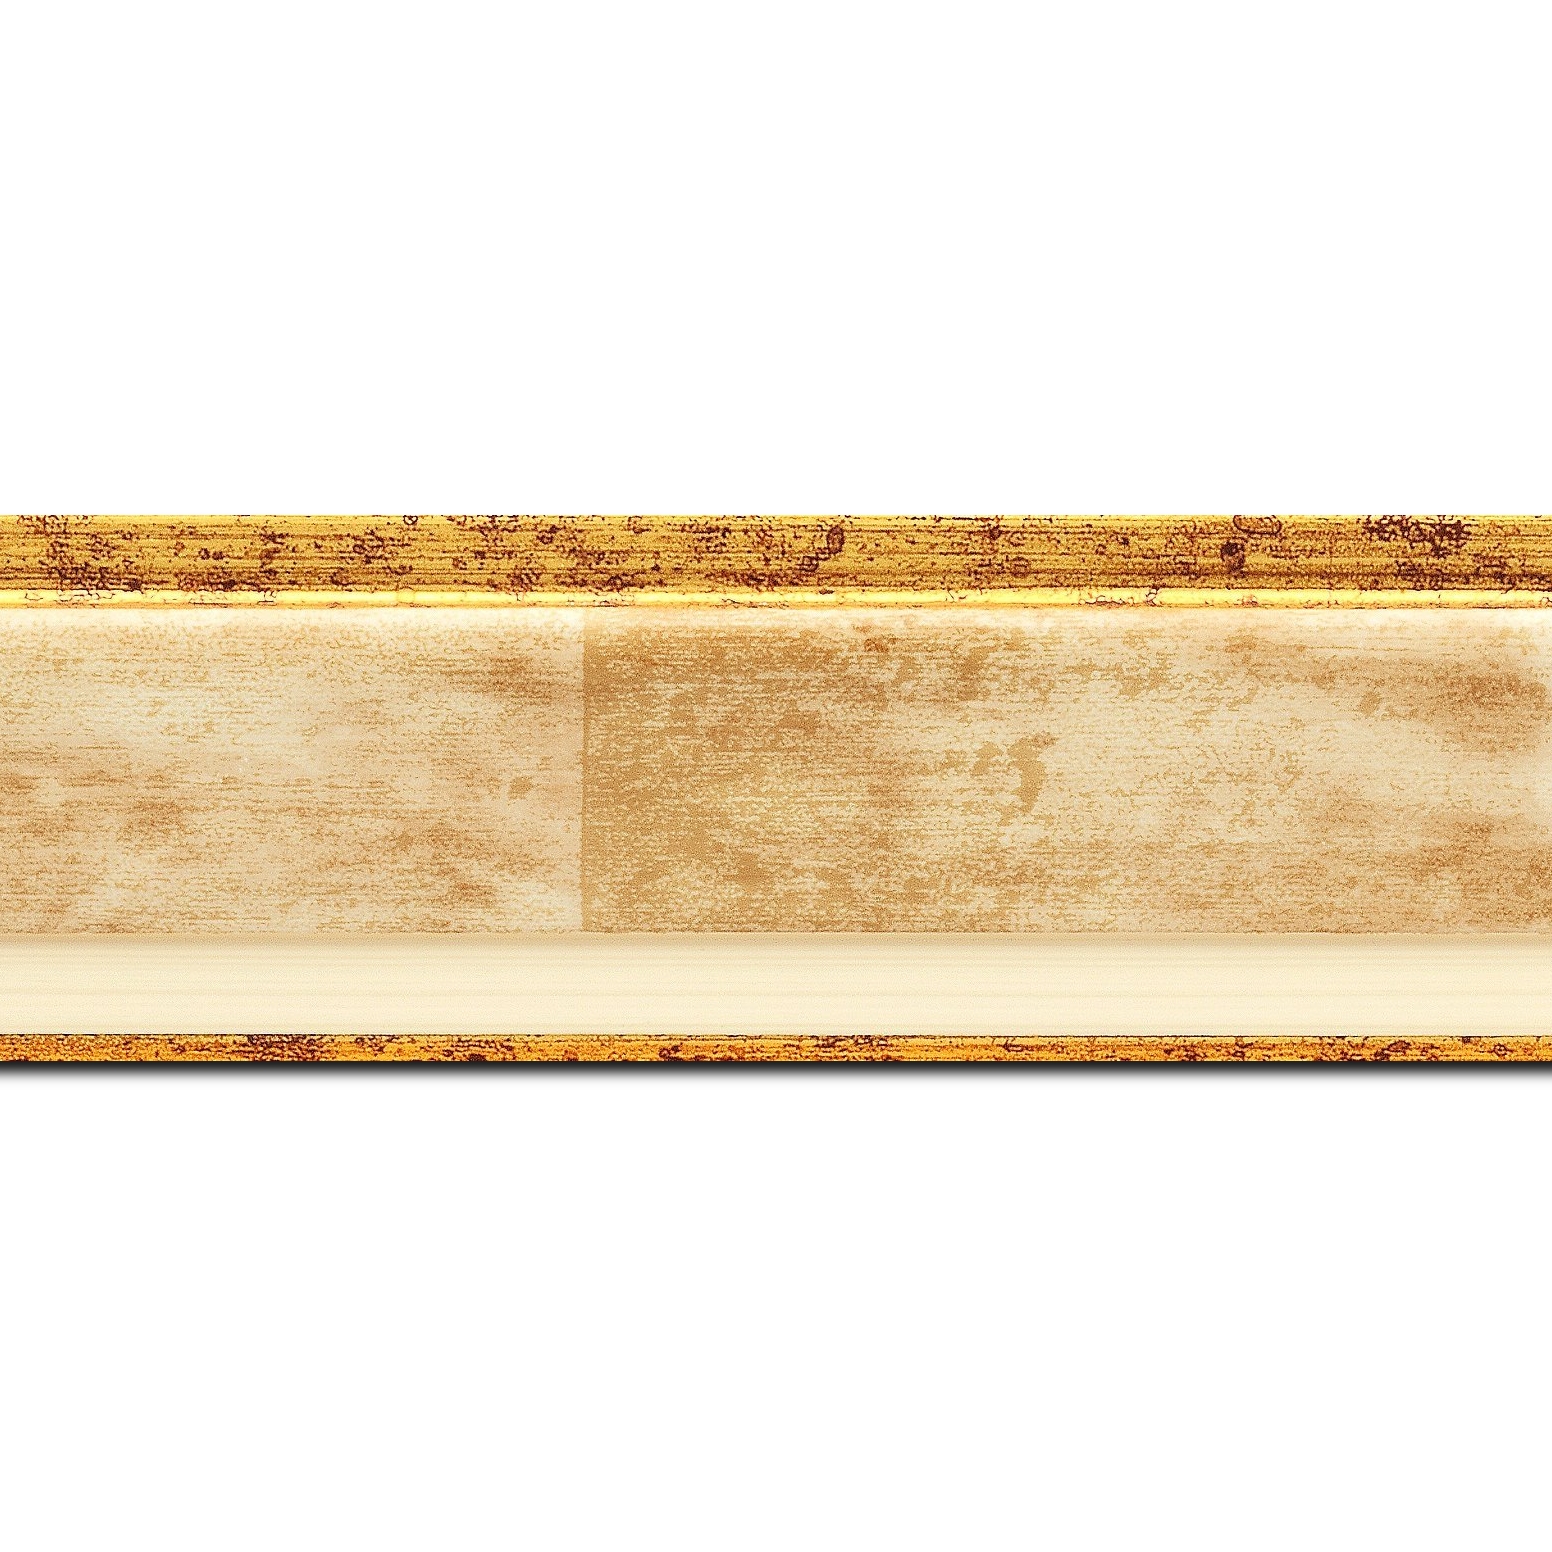 Baguette longueur 1.40m bois profil incliné largeur 5.4cm couleur crème  marie louise crème filet or intégrée